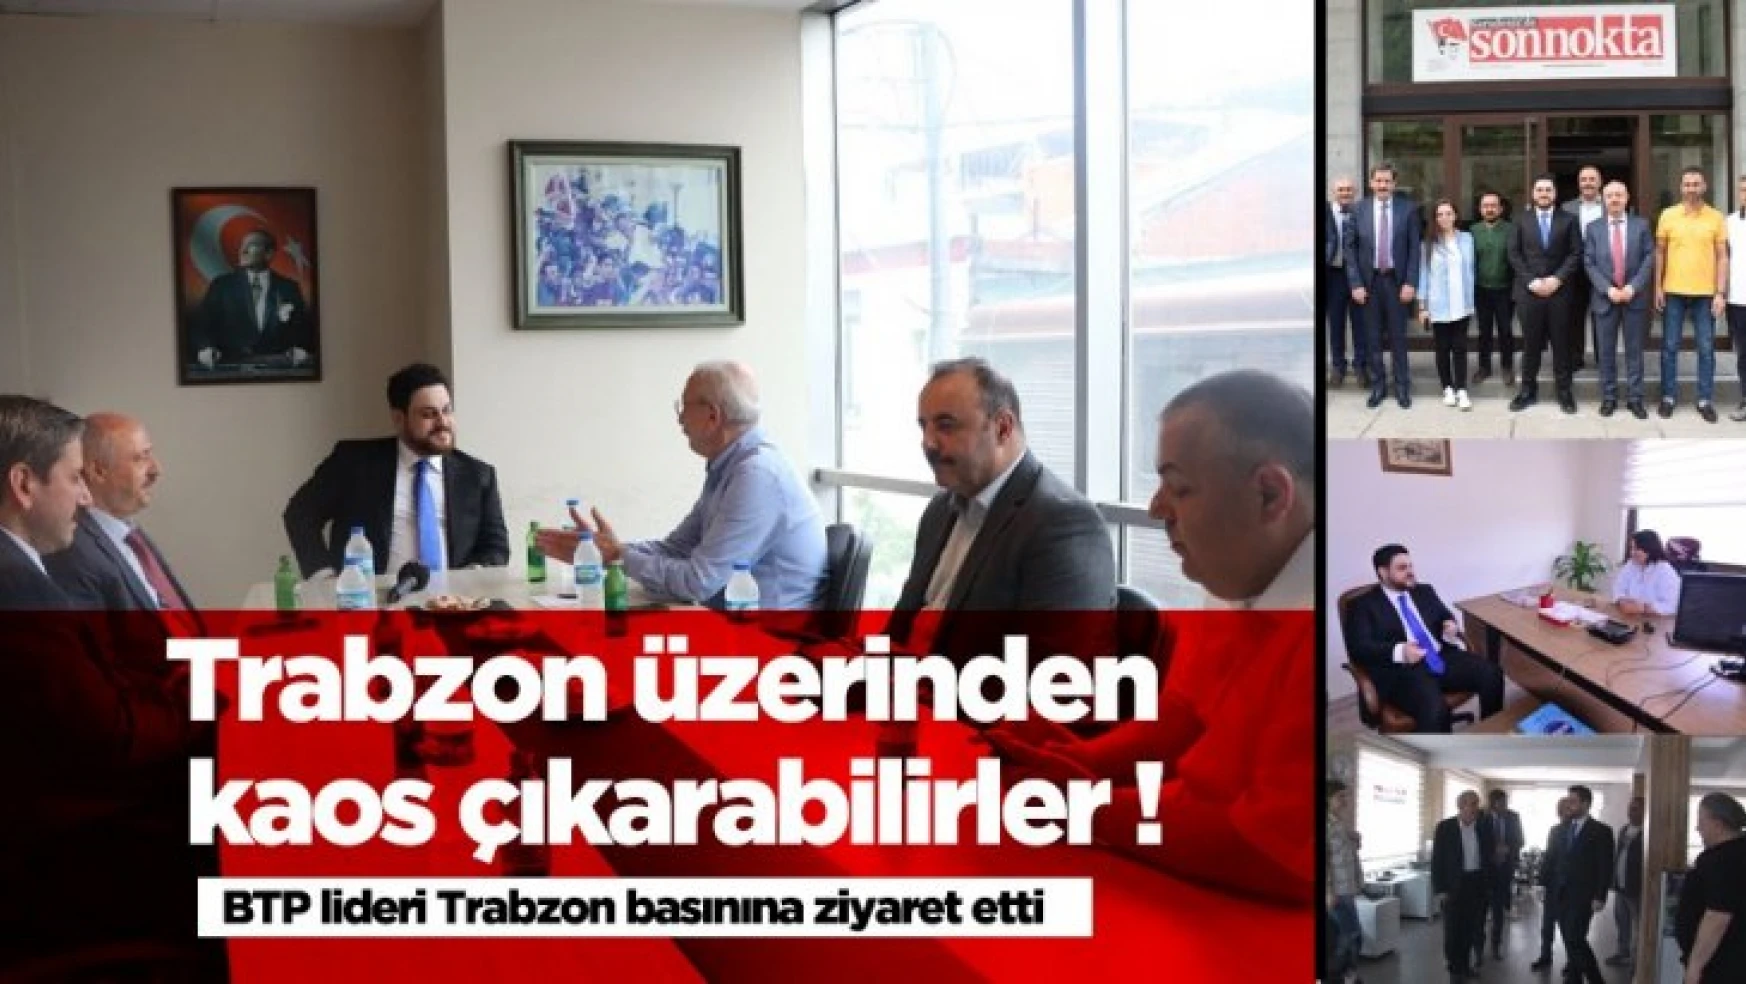 Trabzon üzerinden kaos çıkarmak isteyecekler